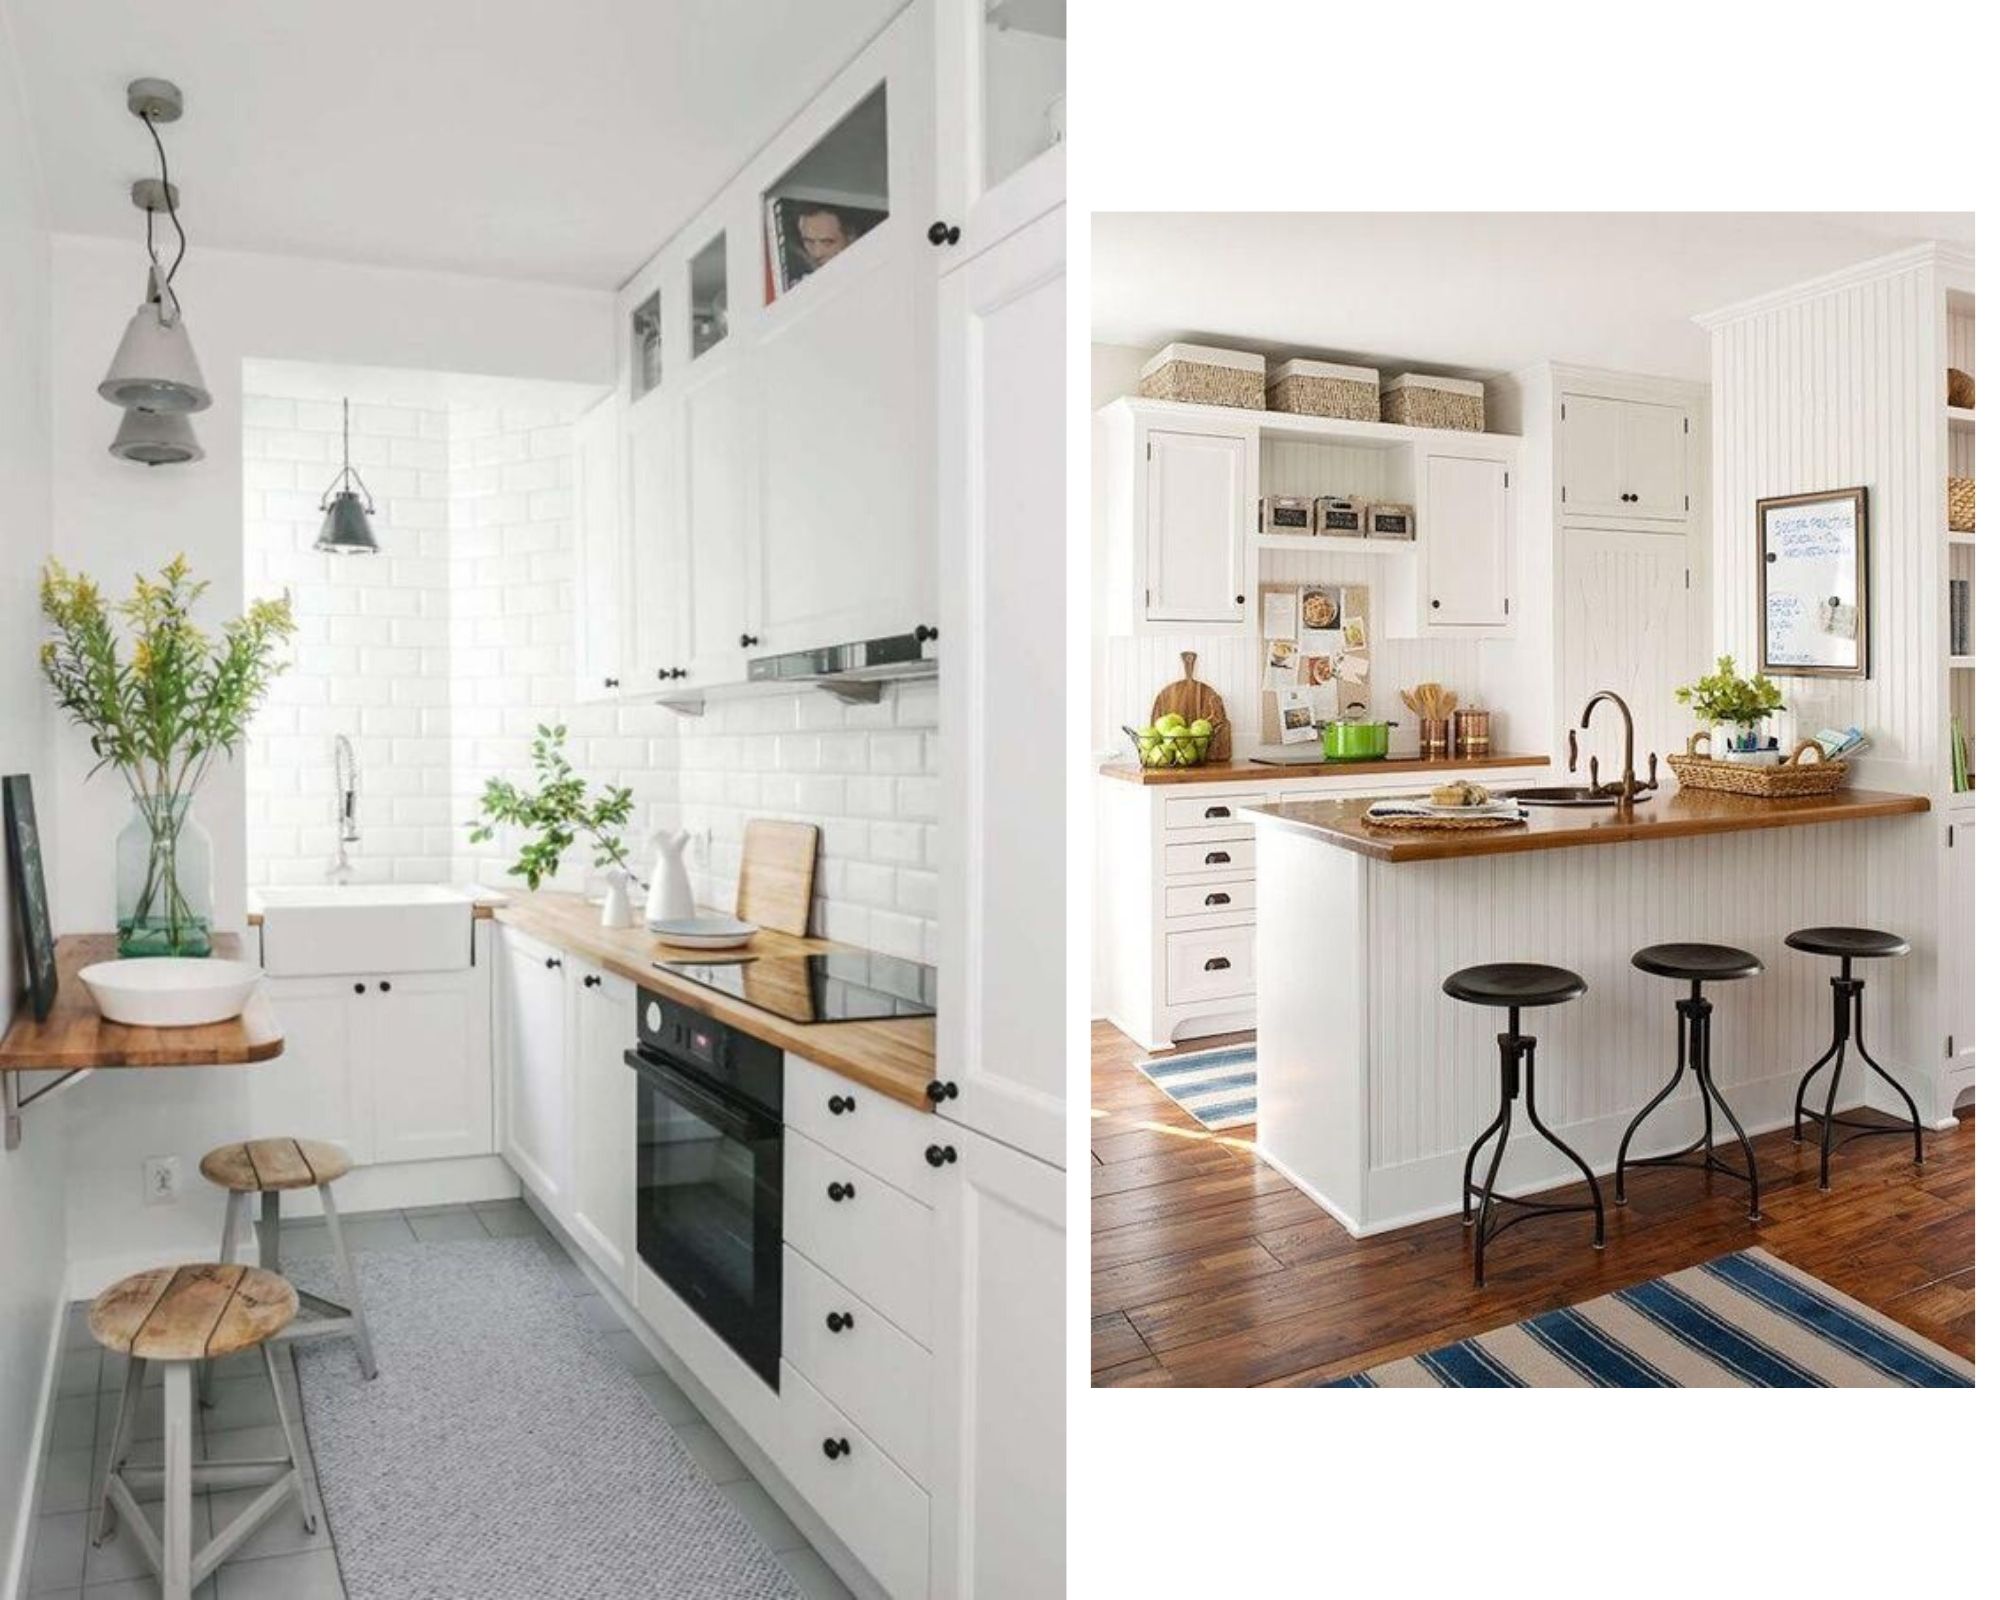 Cocinas pequeñas: 6 Consejos de Diseño, decoración y mobiliario